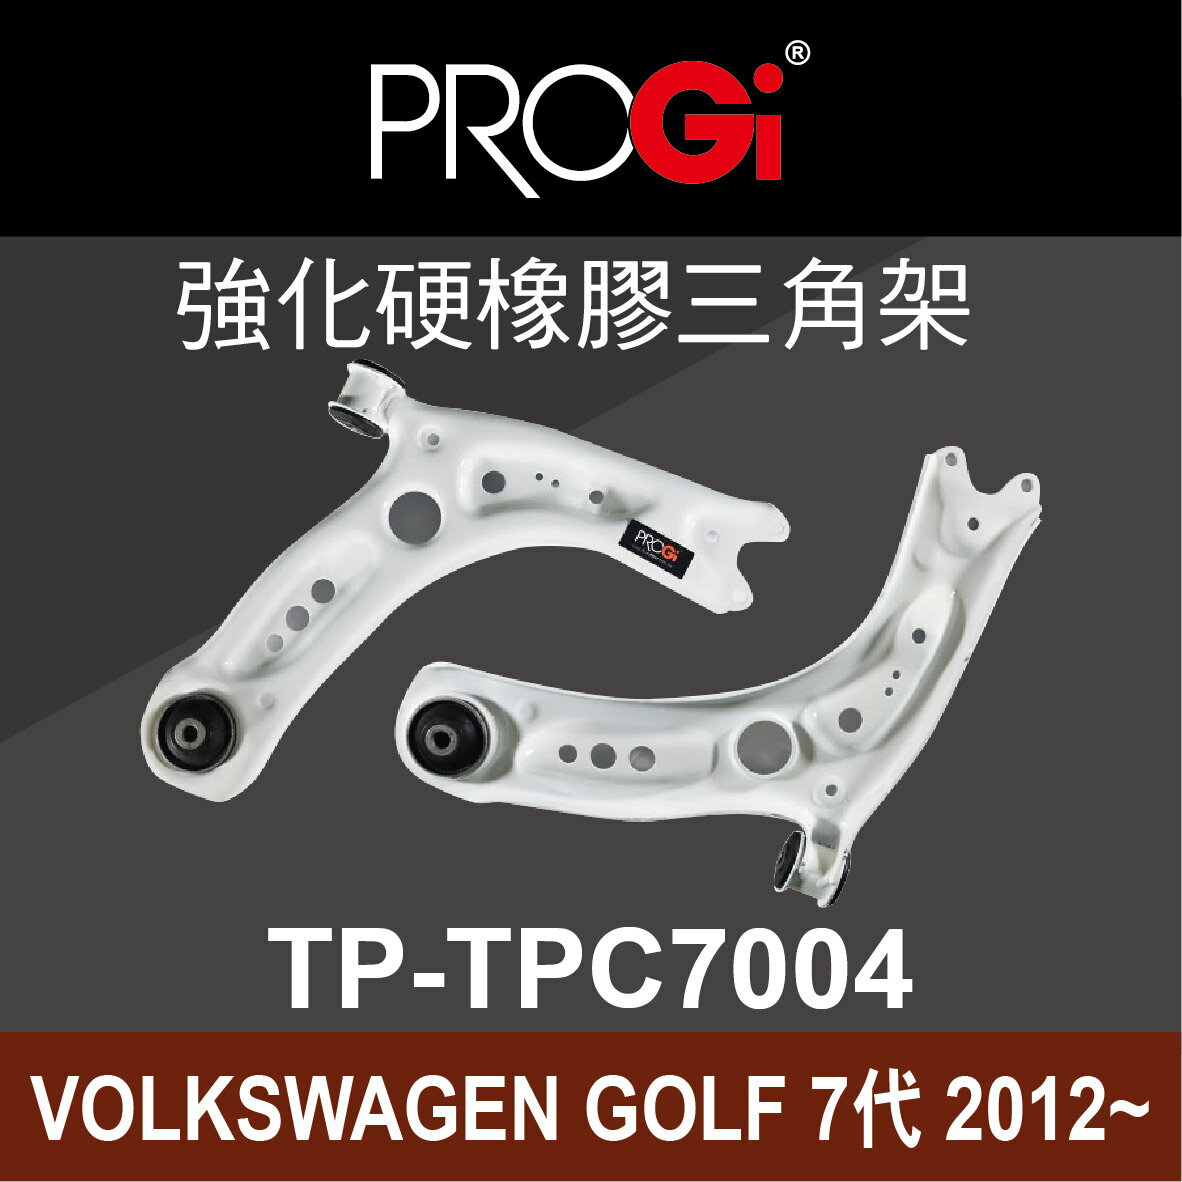 真便宜 [預購]PROGi TP-TPC7004 強化硬橡膠三角架(VOLKSWAGEN GOLF 7代 2012~)